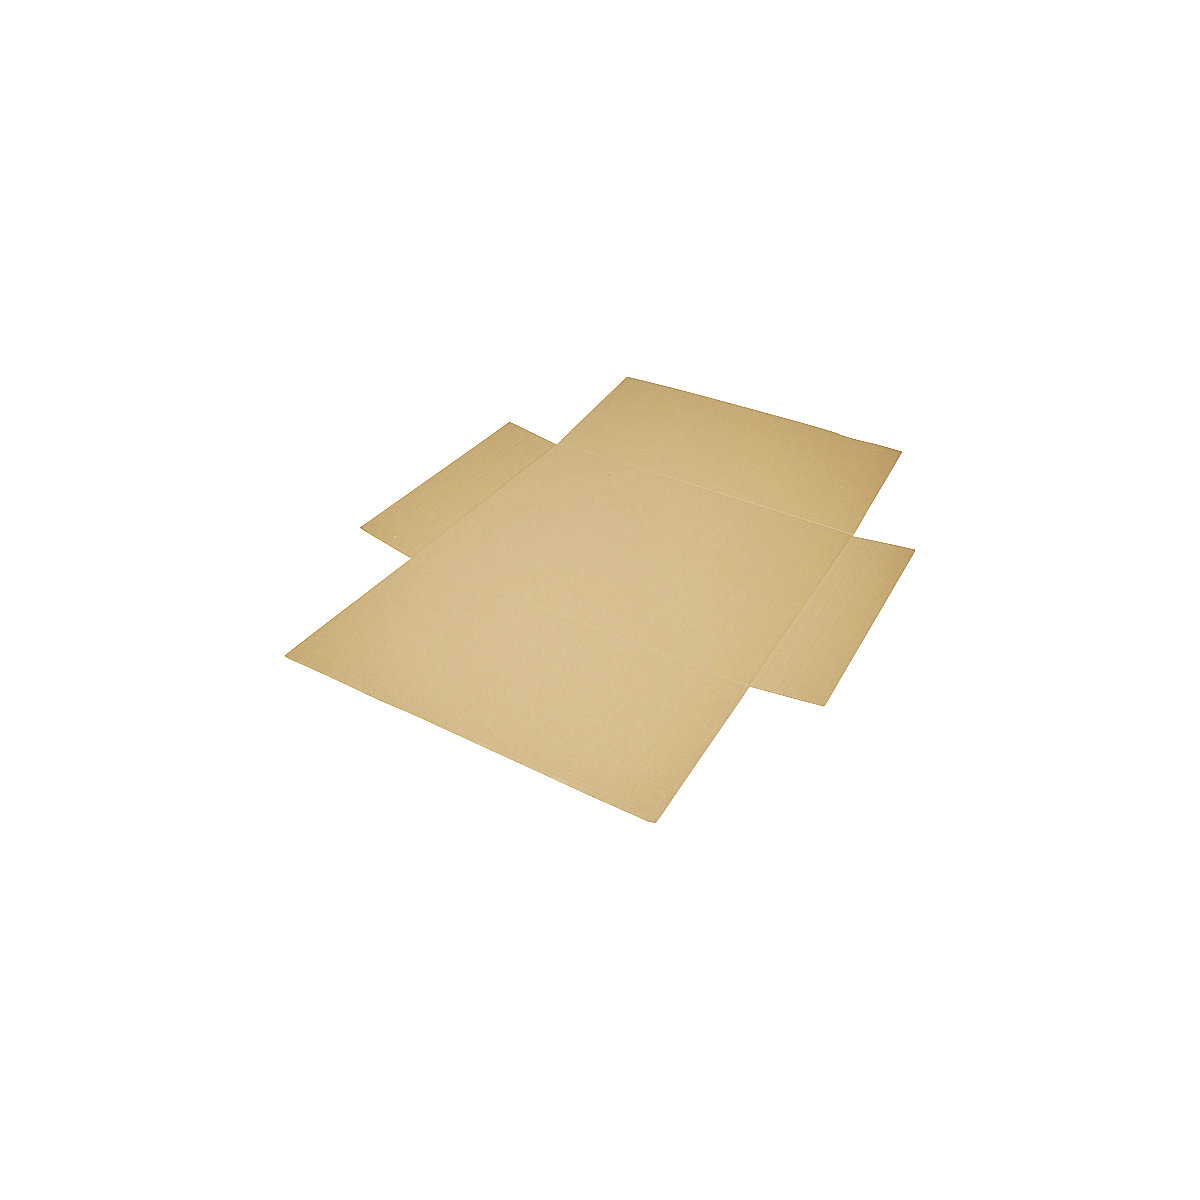 Imballaggio incrociato, in pezzo unico, a 1 parete, marrone, lungh. x largh. 600 x 425 mm, altezza di riempimento 50 mm, a partire da 300 pz.-6